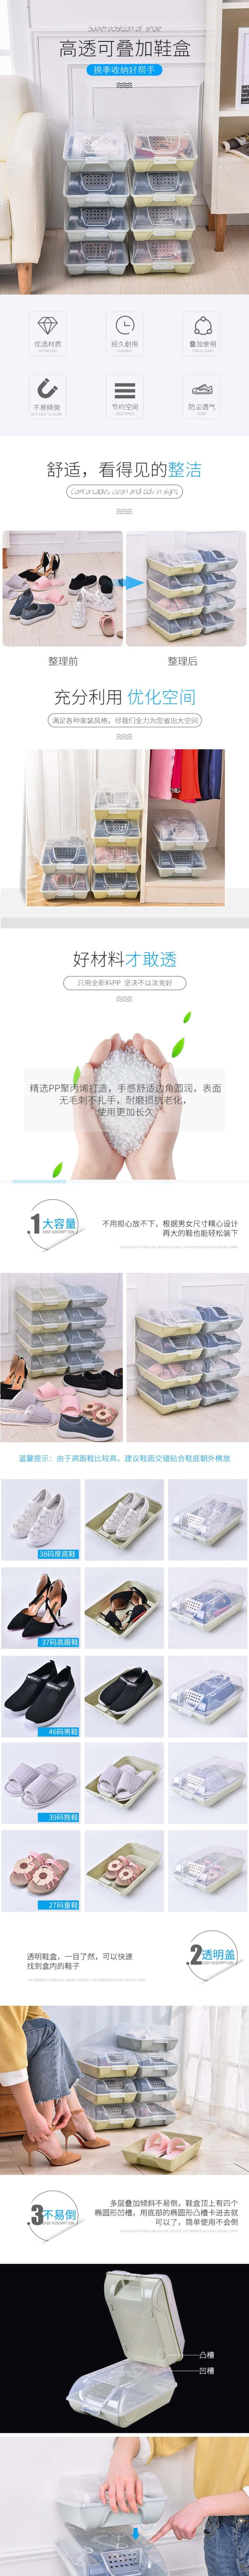  FantianHome 塑料透明防尘鞋盒 透气收纳盒 可叠加整理 2个装